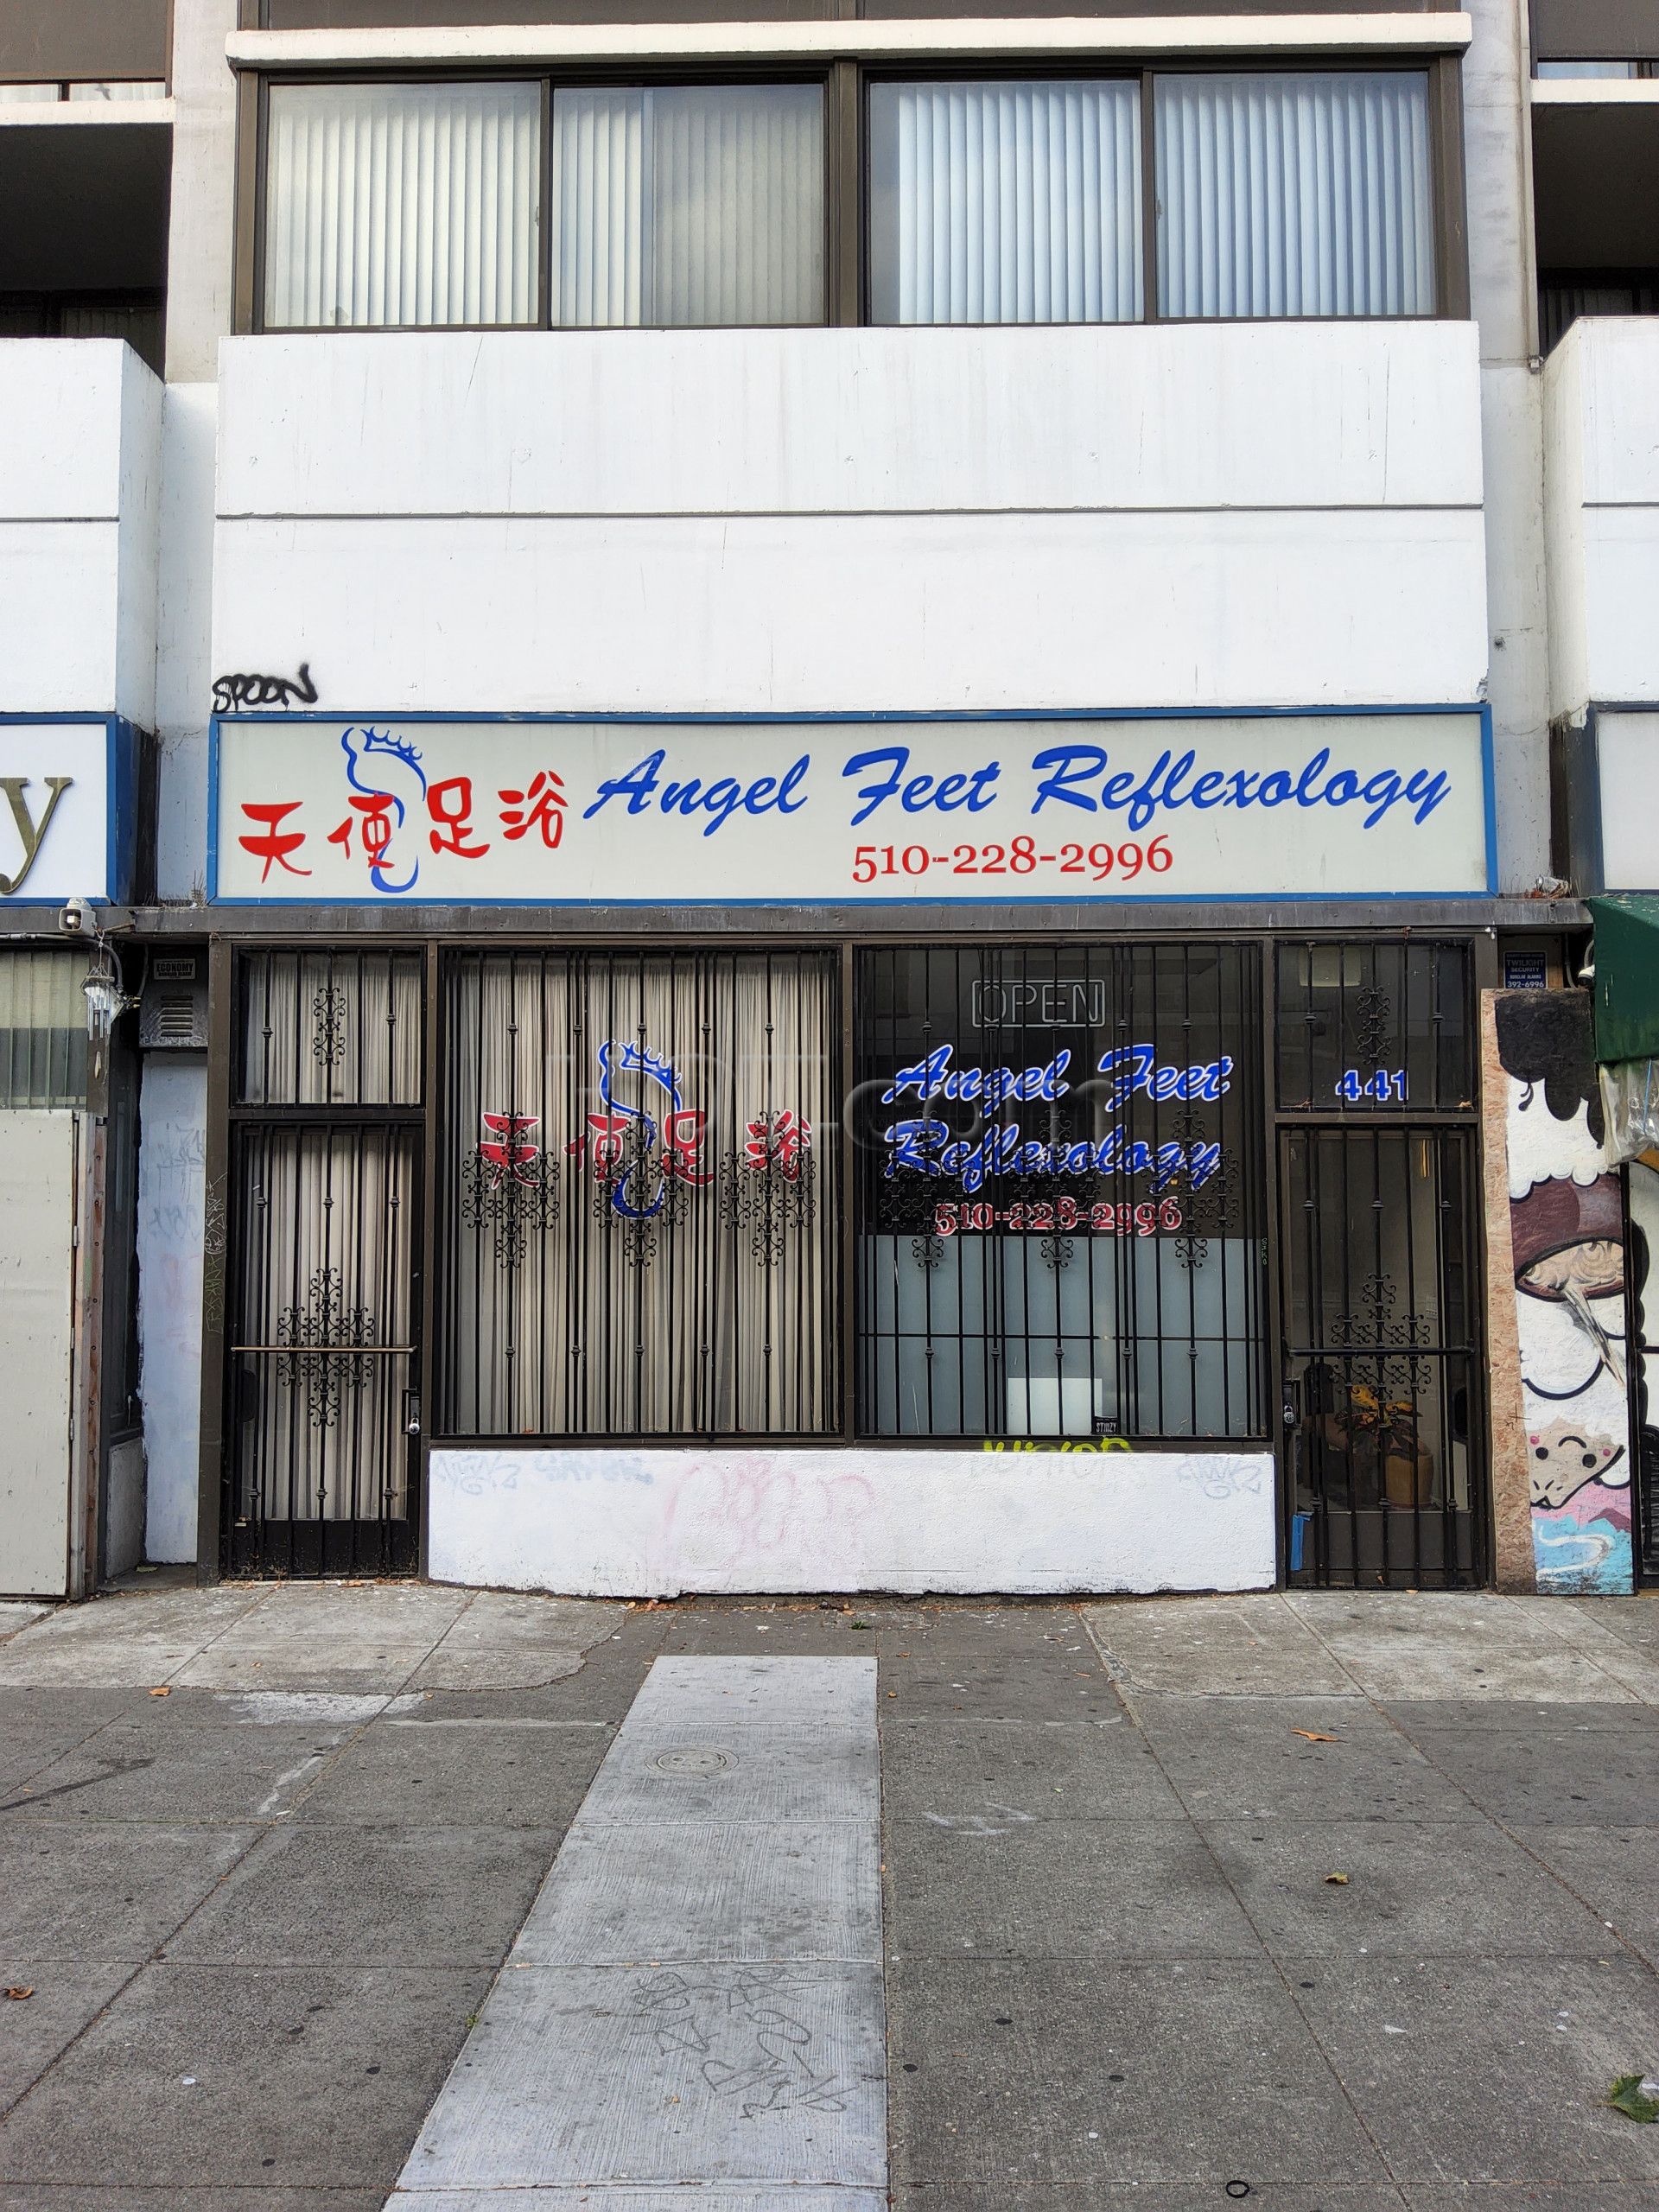 Oakland, California Angel Feet Reflexology